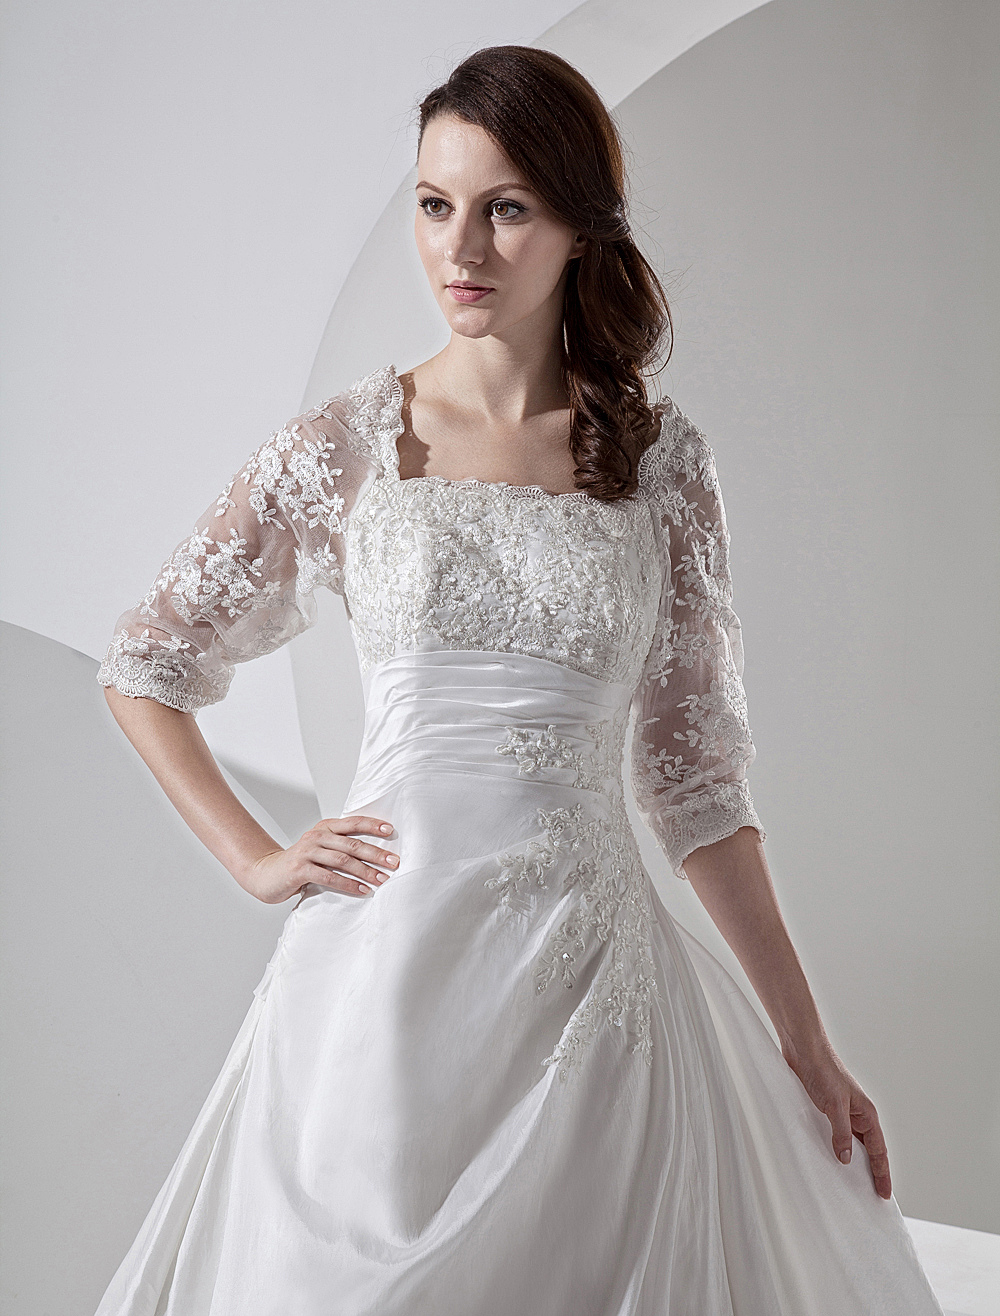 Court Train Ivory Bridal Wedding Dress with Square Neck - Milanoo.com